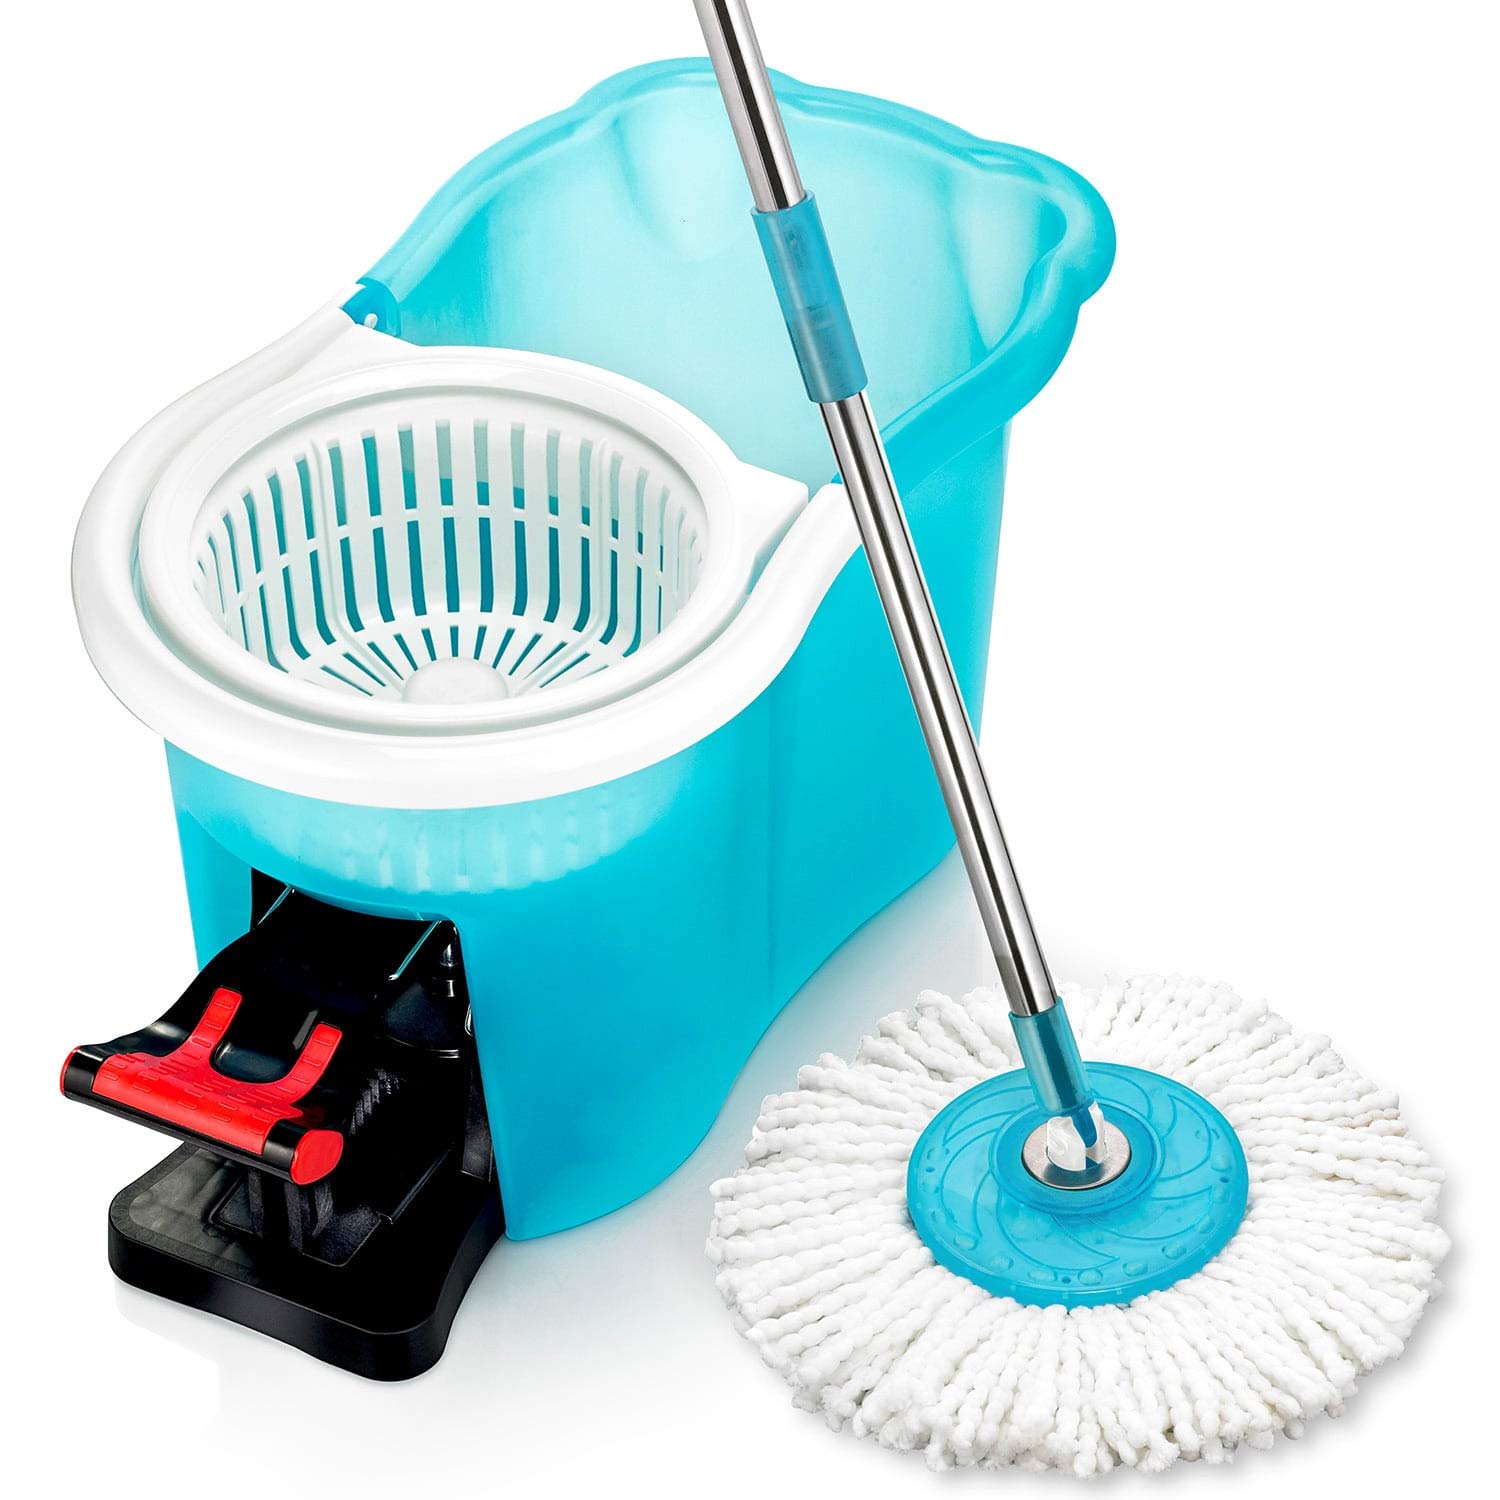 Spin Mop + Fiesta Floor Cleaner + Extra Mop Head